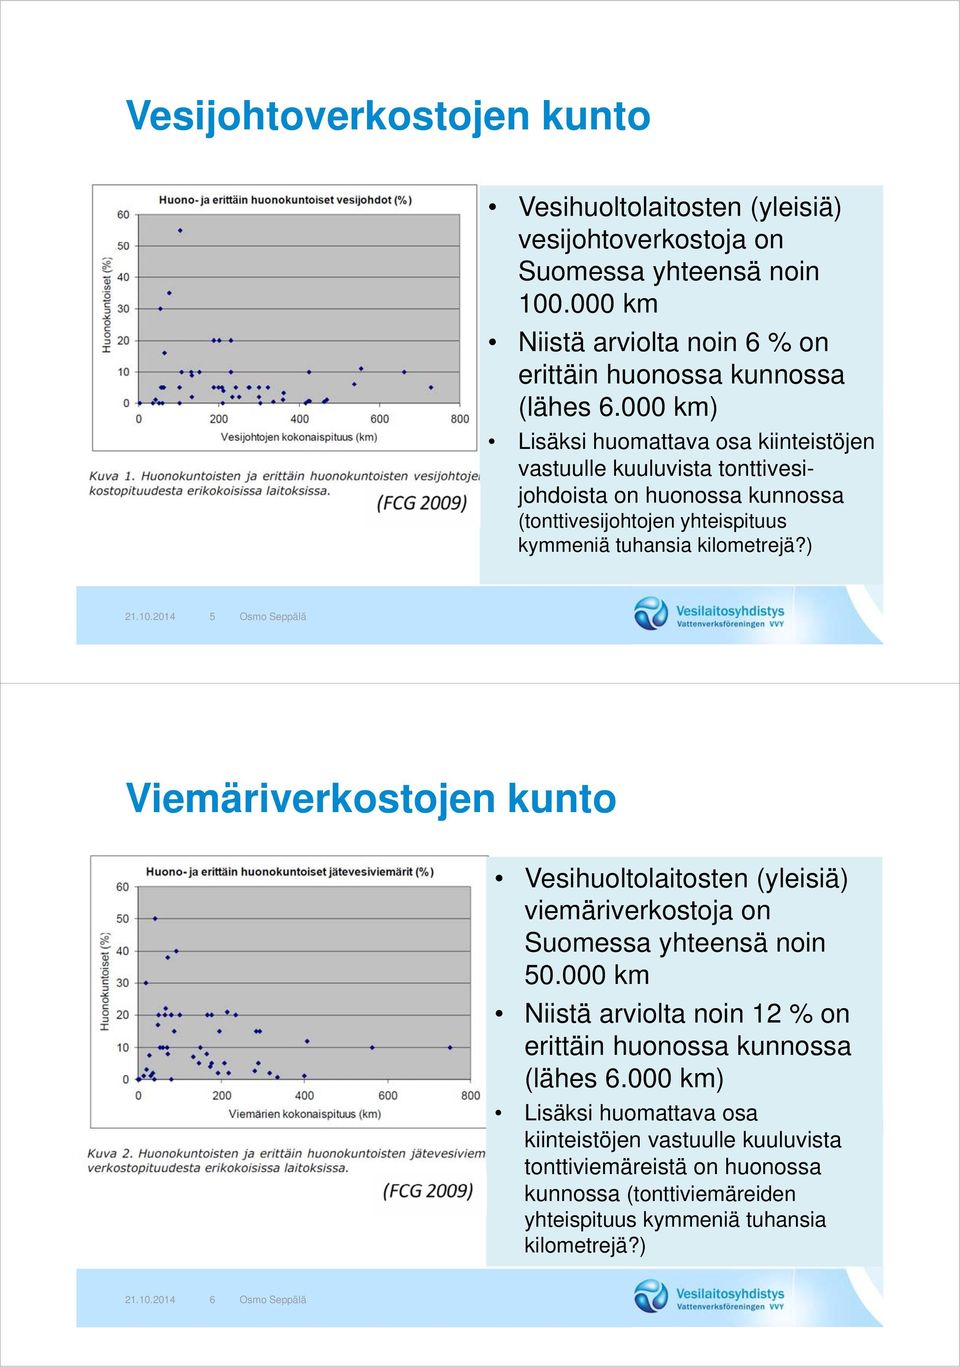 2014 5 Osmo Seppälä Viemäriverkostojen kunto Vesihuoltolaitosten (yleisiä) viemäriverkostoja on Suomessa yhteensä noin 50.